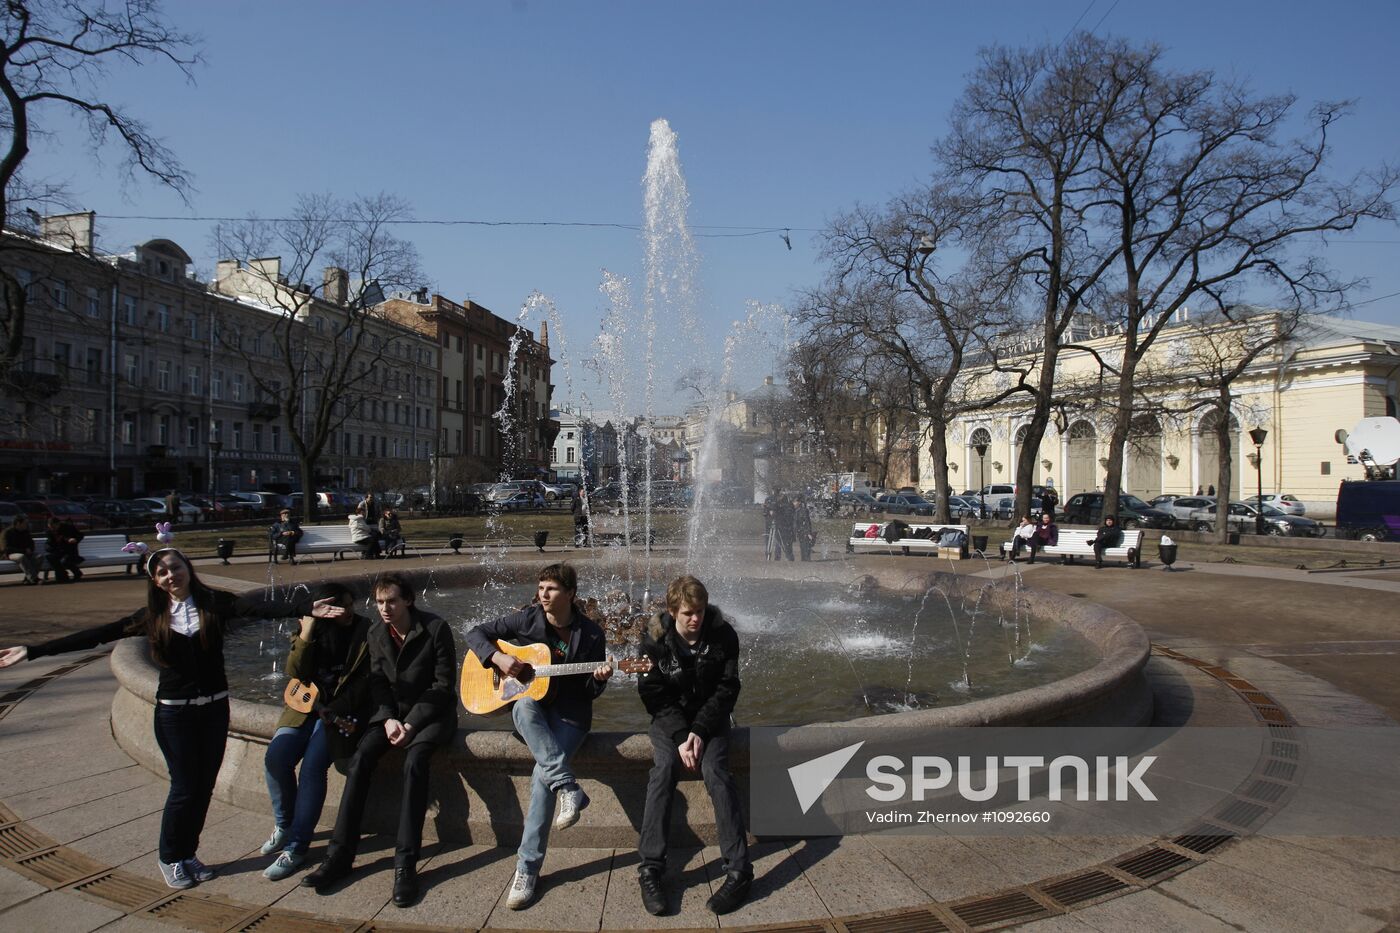 Fountain season starts in St. Petersburg